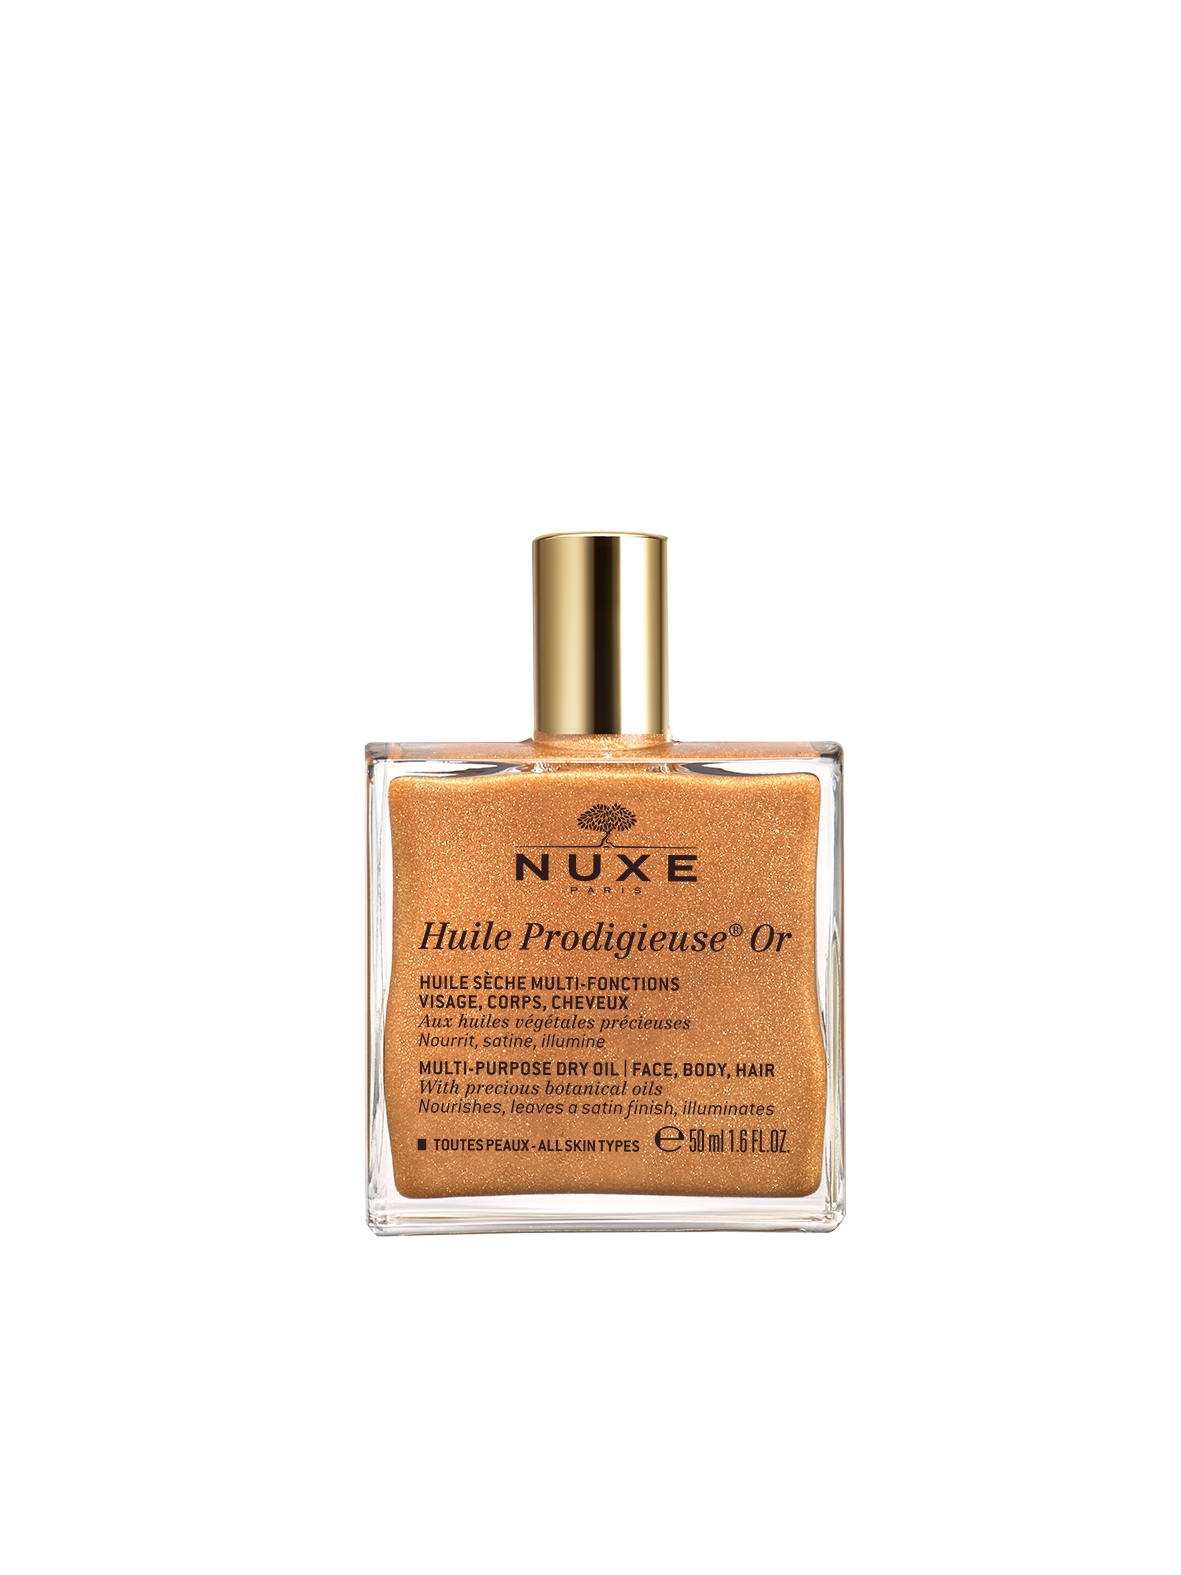 Nuxe huile Prodigieuse Or, Gesicht, Körper, Haare bietet Weichheit und  Glanz.